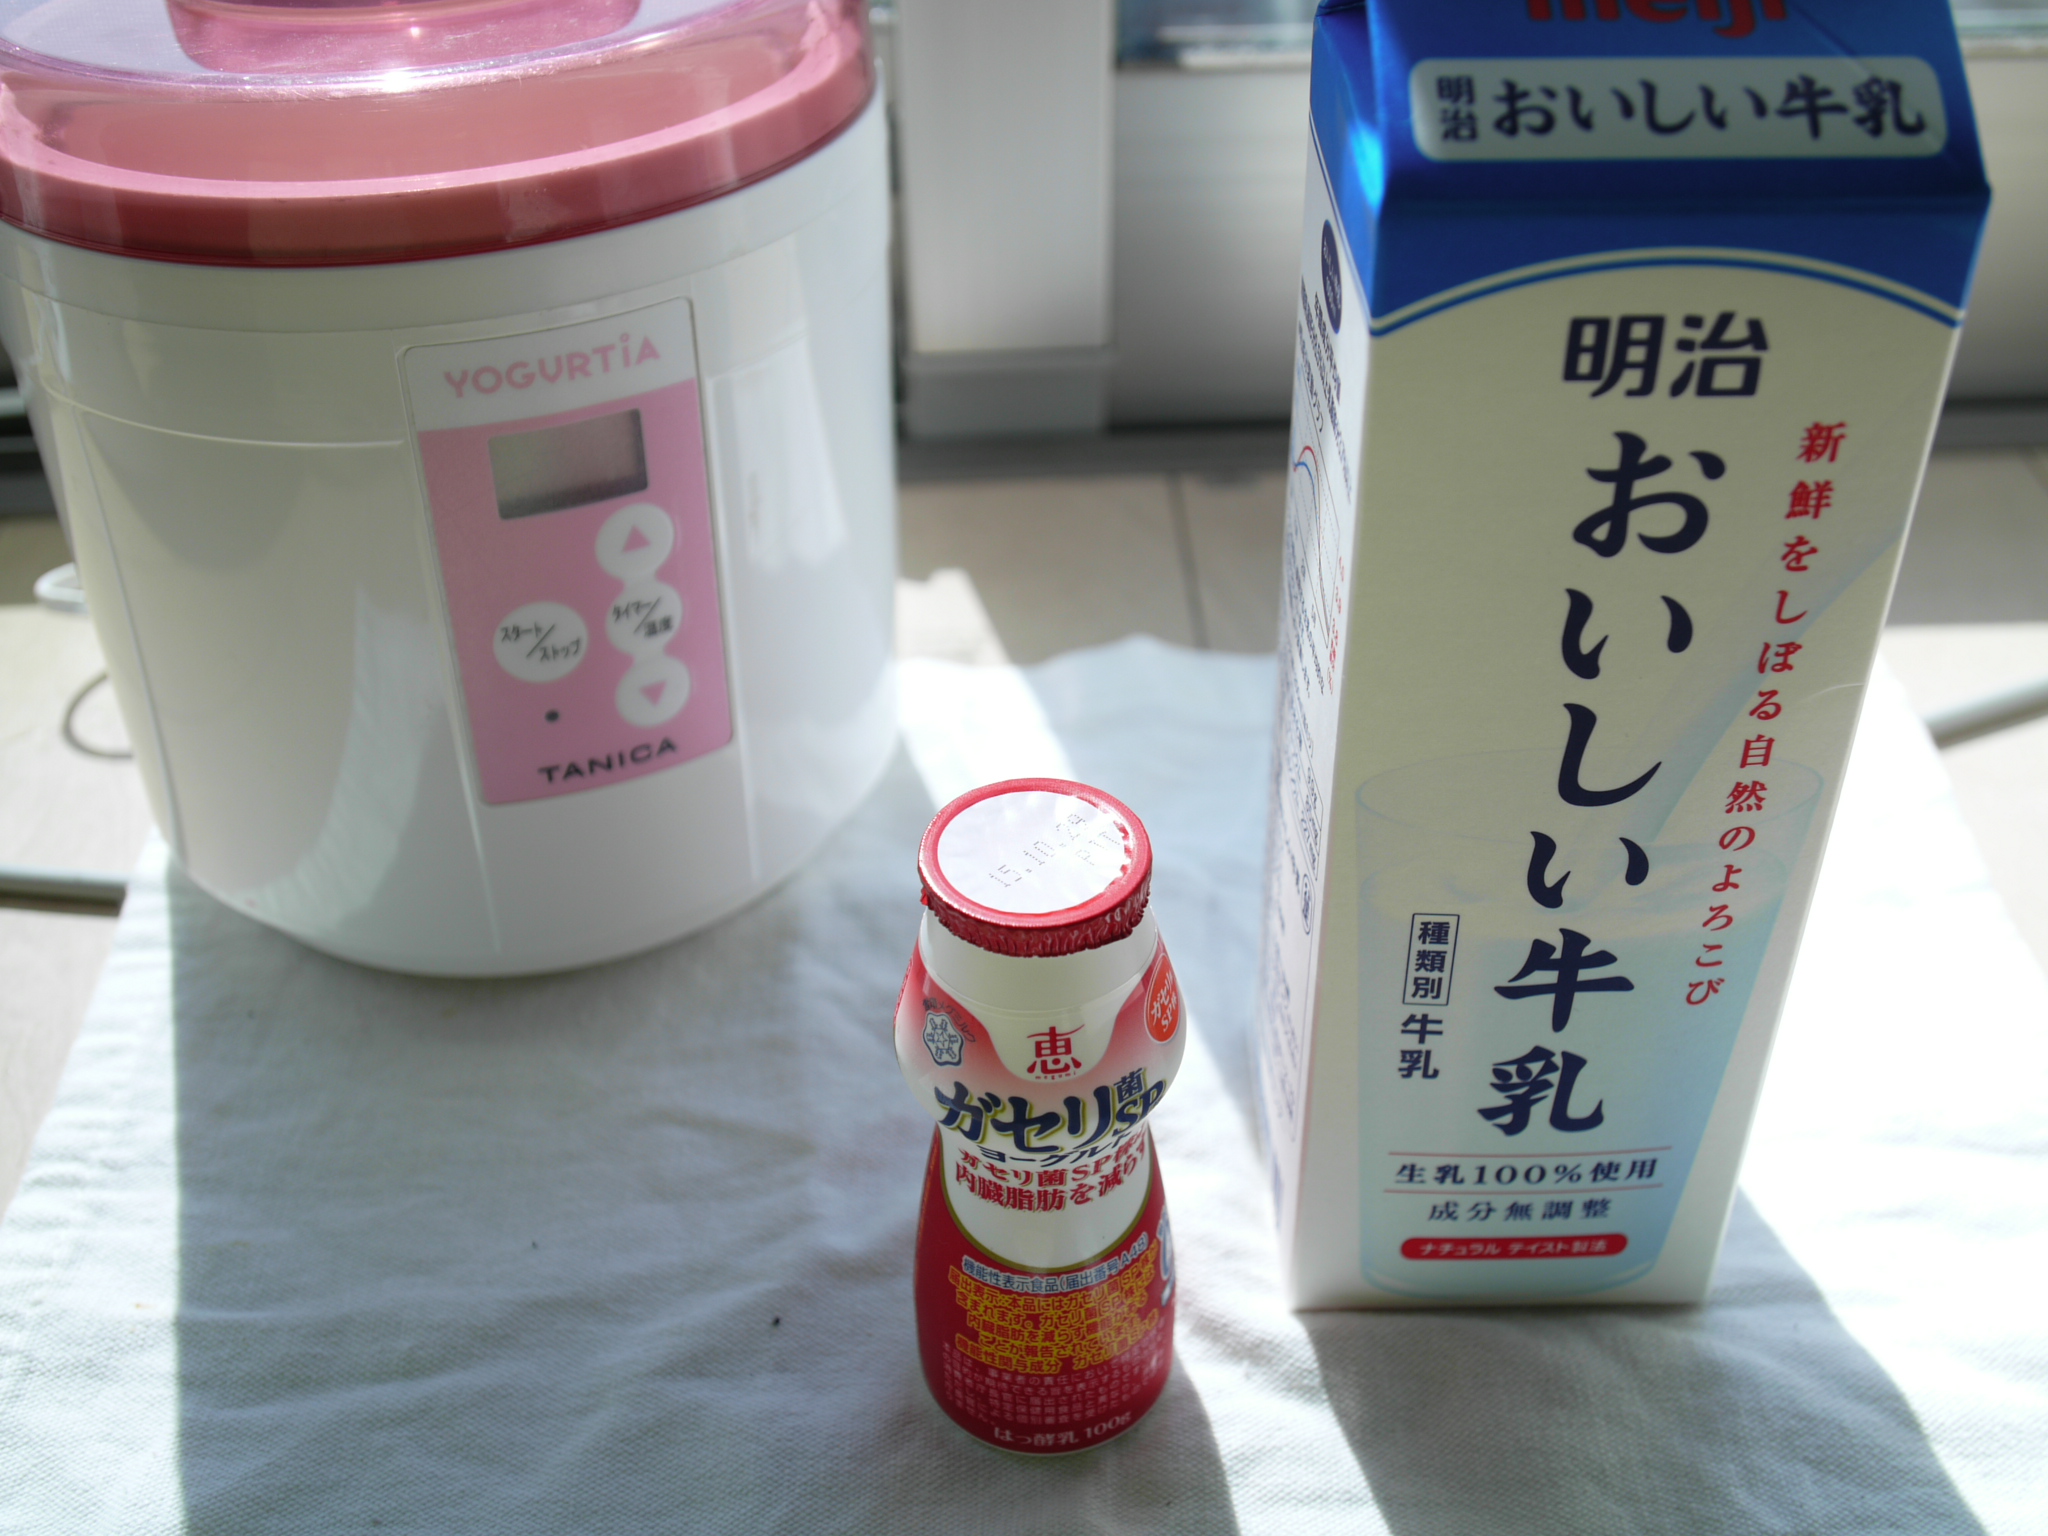 作り方 ヨーグルト 恵ガセリ菌sp株 おいしい牛乳編 タニカブログ